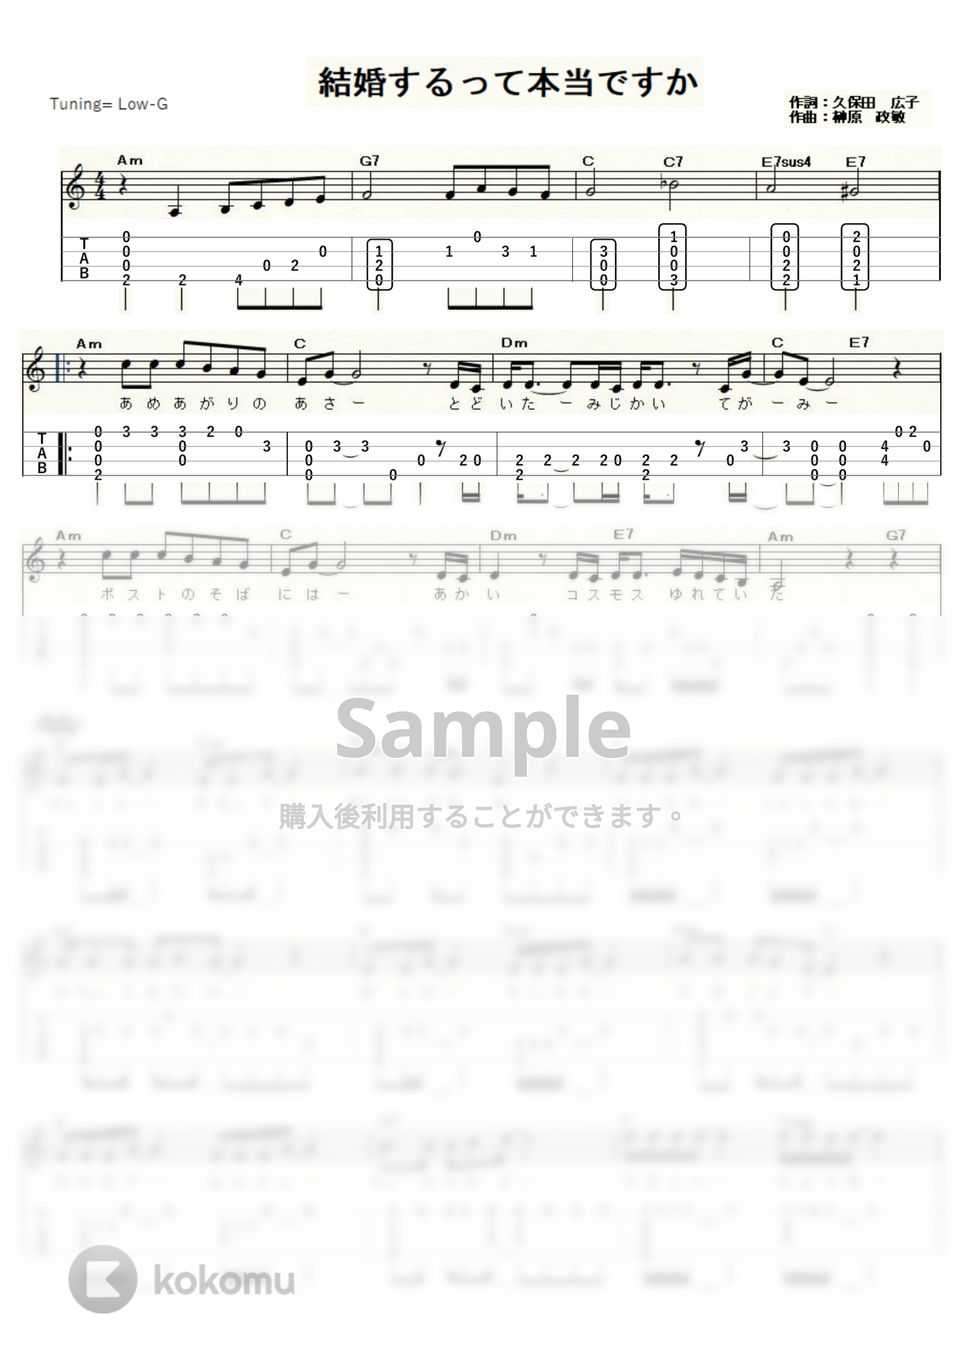 ダ・カーポ - 結婚するって本当ですか (ｳｸﾚﾚｿﾛ/Low-G/中級) by ukulelepapa